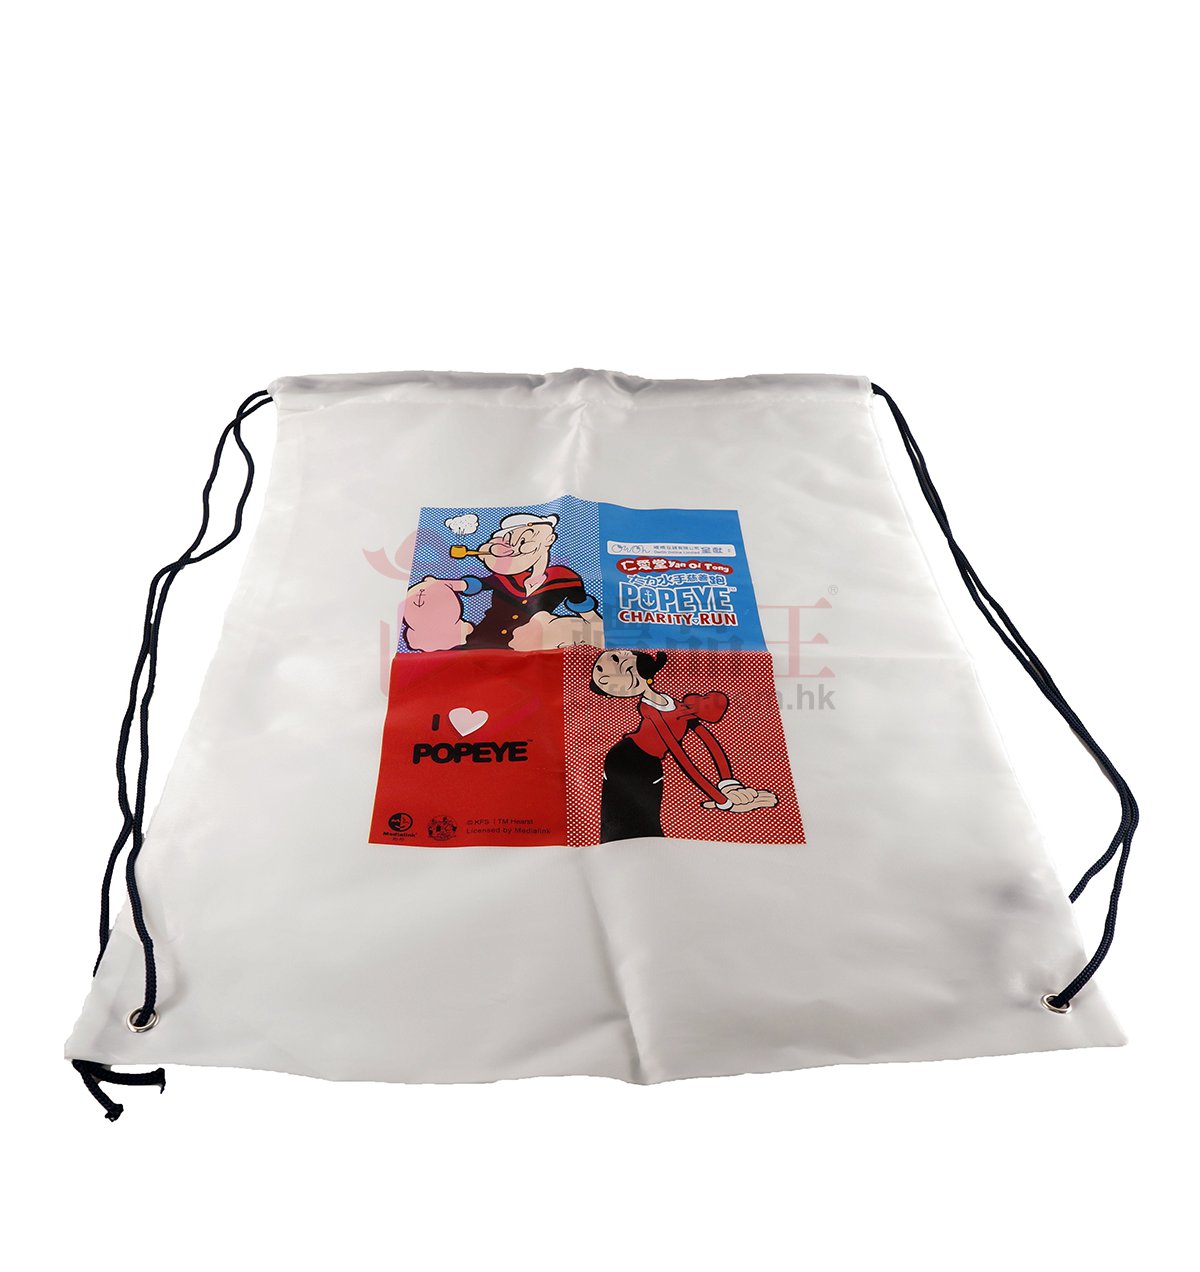 Popeye Drawstring Bag (advertising gift)